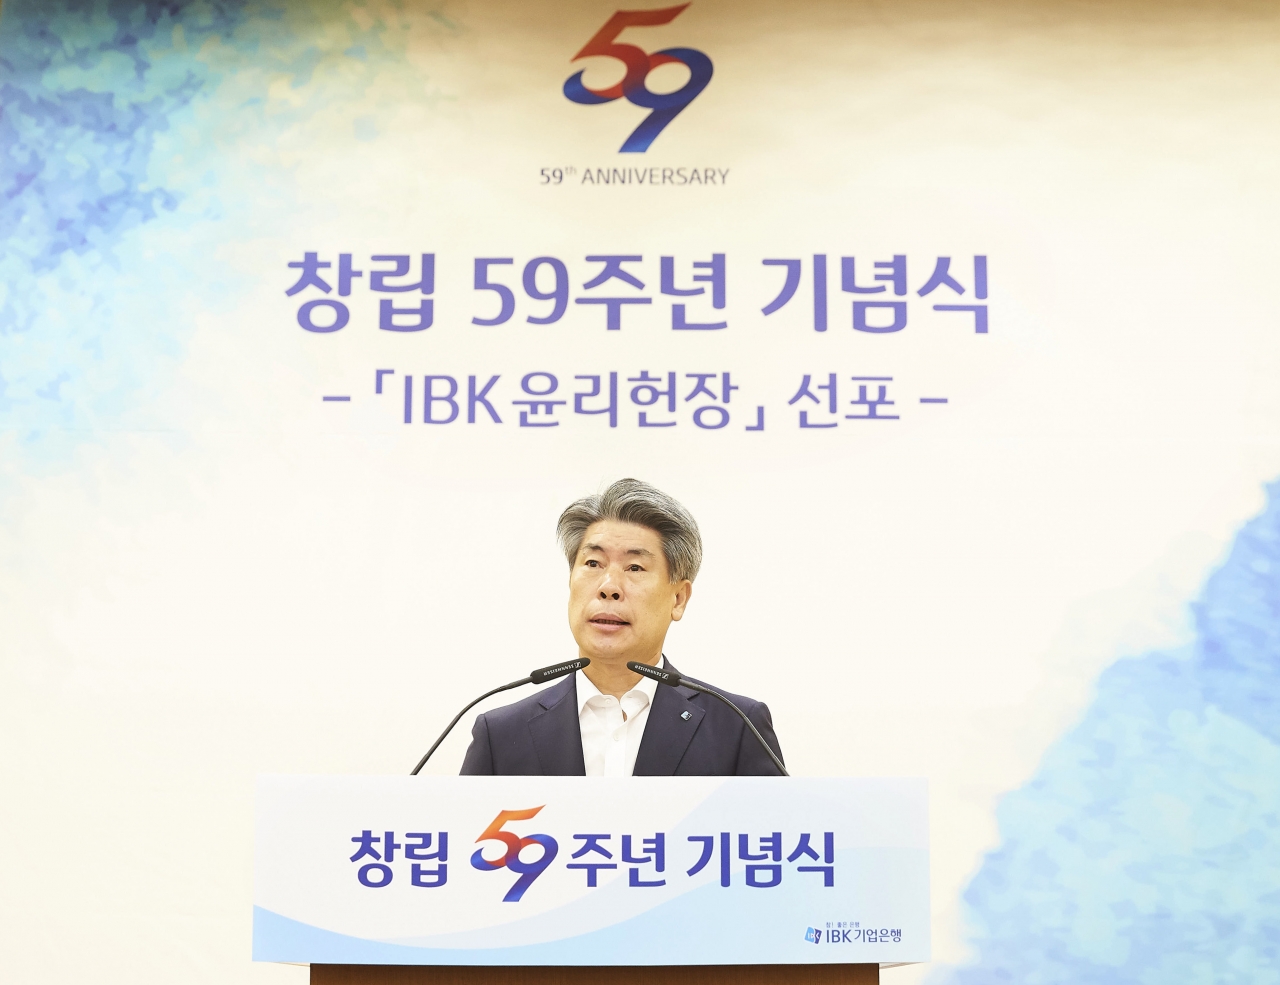 31일 IBK기업은행이 서울 중구 을지로 IBK파이낸스타워에서 창립 59주년 기념식을 열었다. 행사는 외빈 초청행사 없이 임원, 본부 부서장들과 참석했다. 윤종원 행장이 기념사를 하고 있다. 사진=IBK기업은행 제공